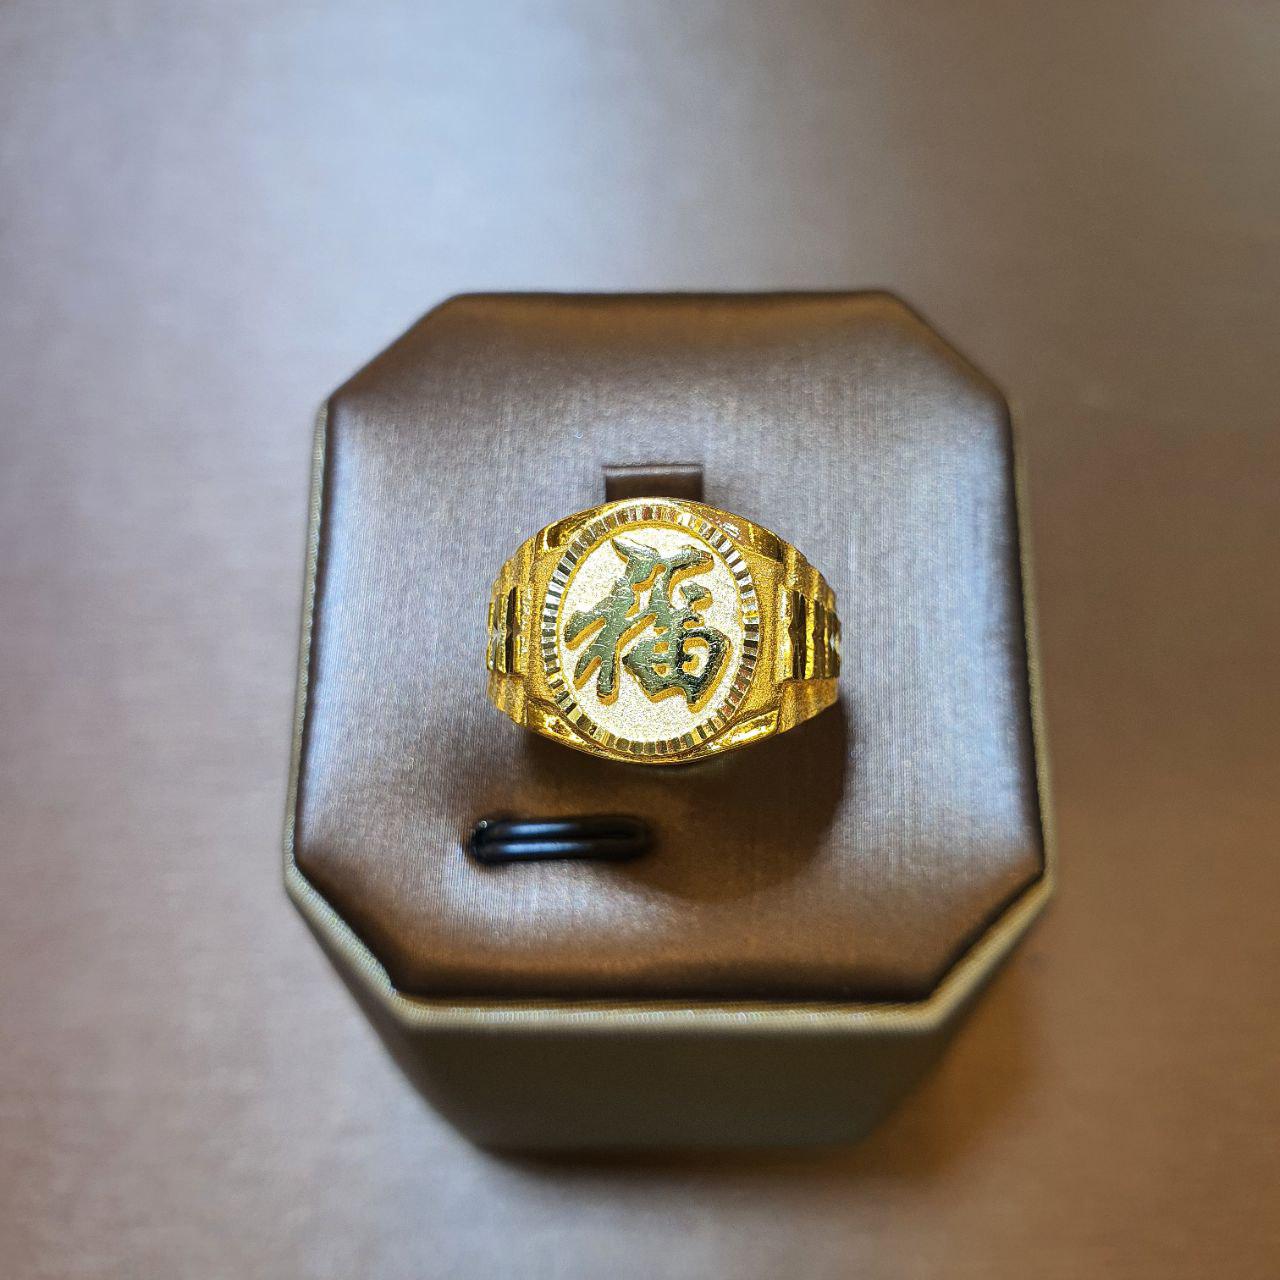 22k / 916 Gold Prosperity Ring V2-916 gold-Best Gold Shop